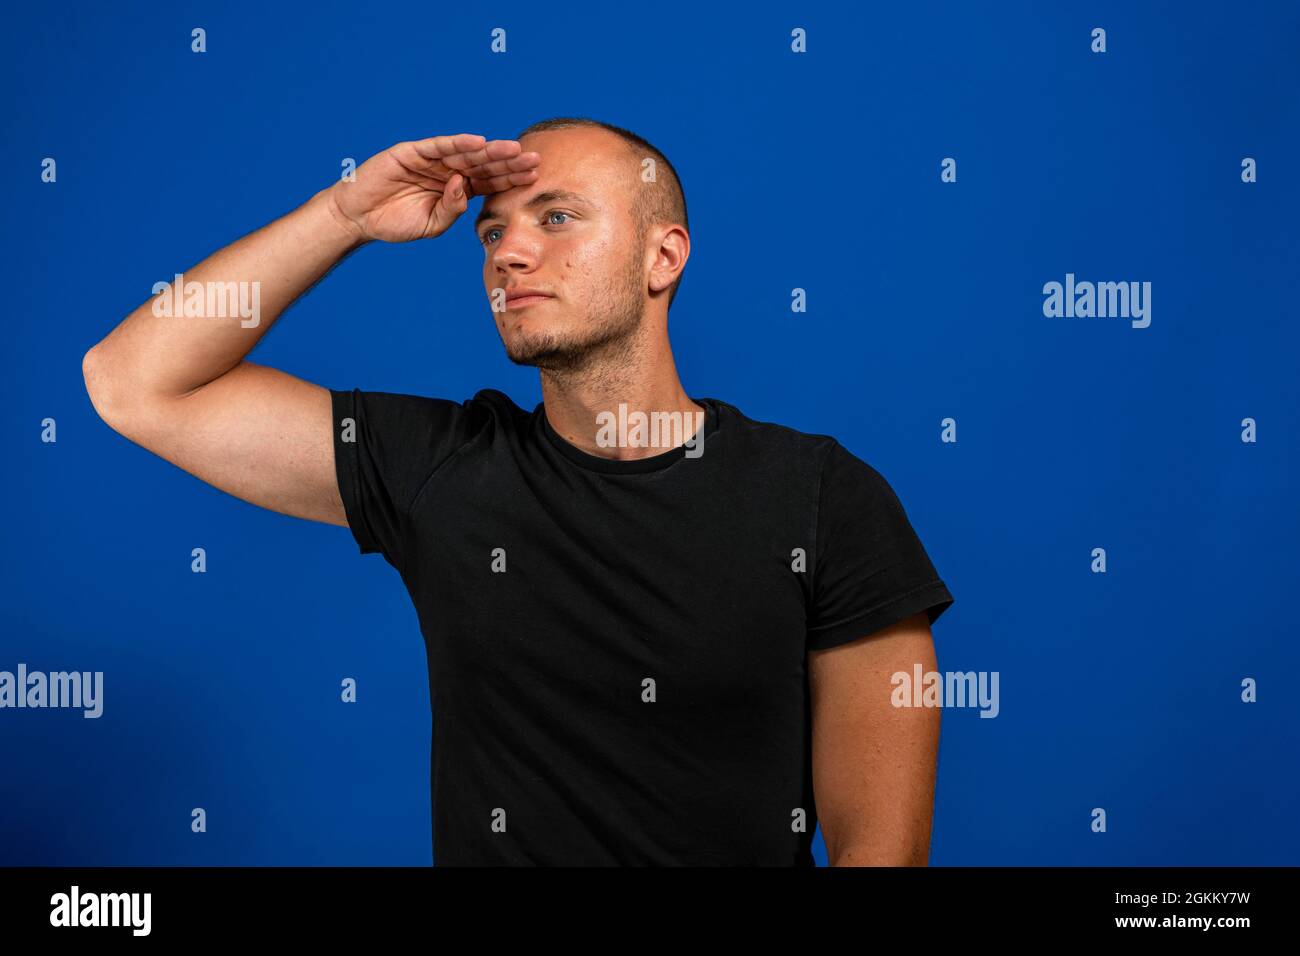 Un jeune homme saluant la caméra par un hommage militaire dans un acte d'honneur et de patriotisme, montrant le respect contre le mur bleu Banque D'Images